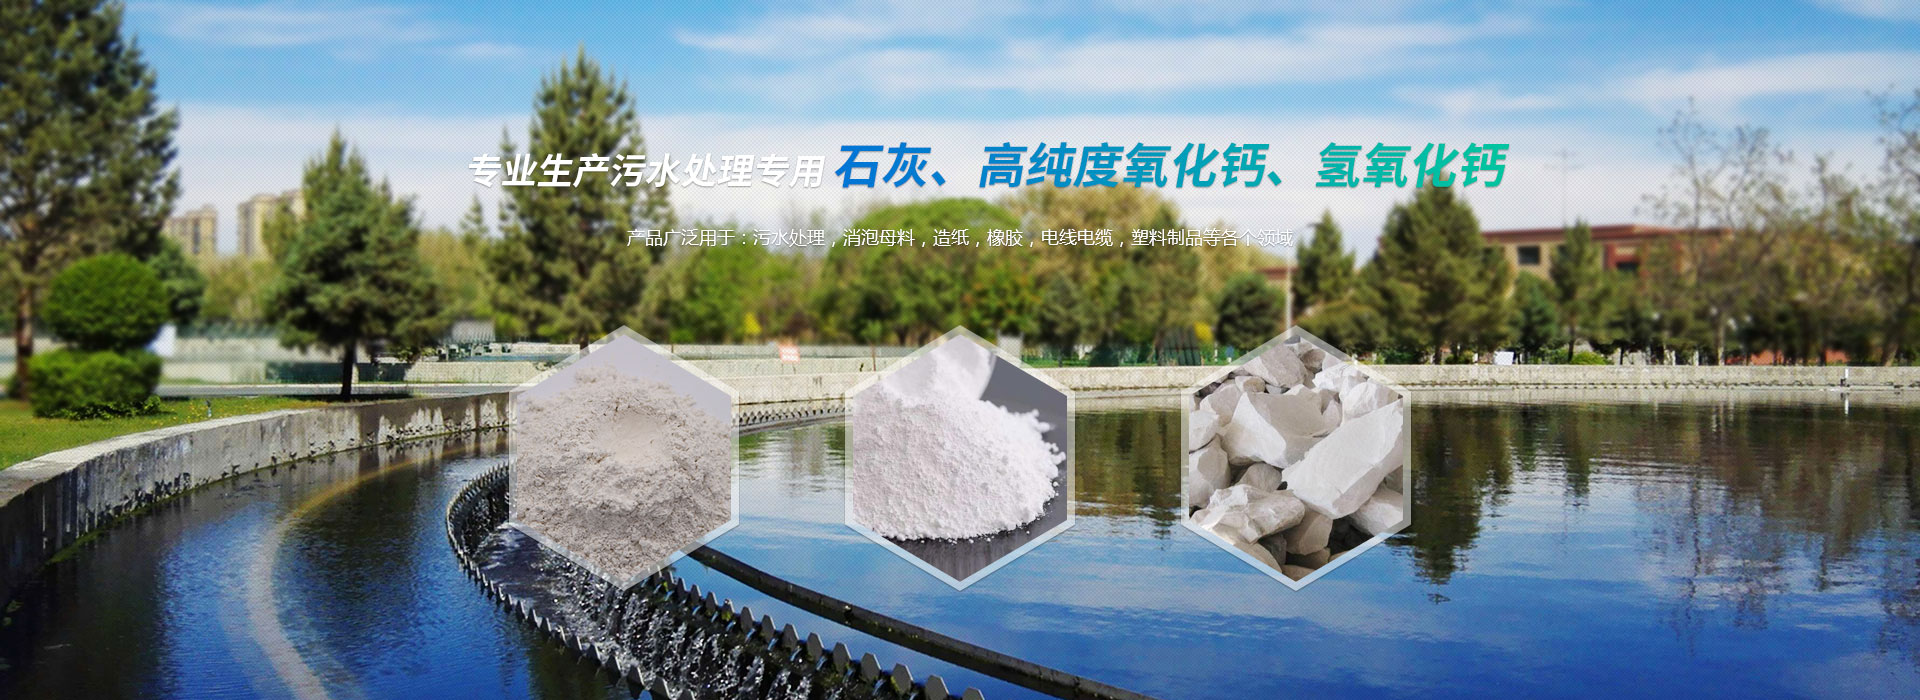 專業生產污水處理專用石灰、高純度氧化鈣、氫氧化鈣